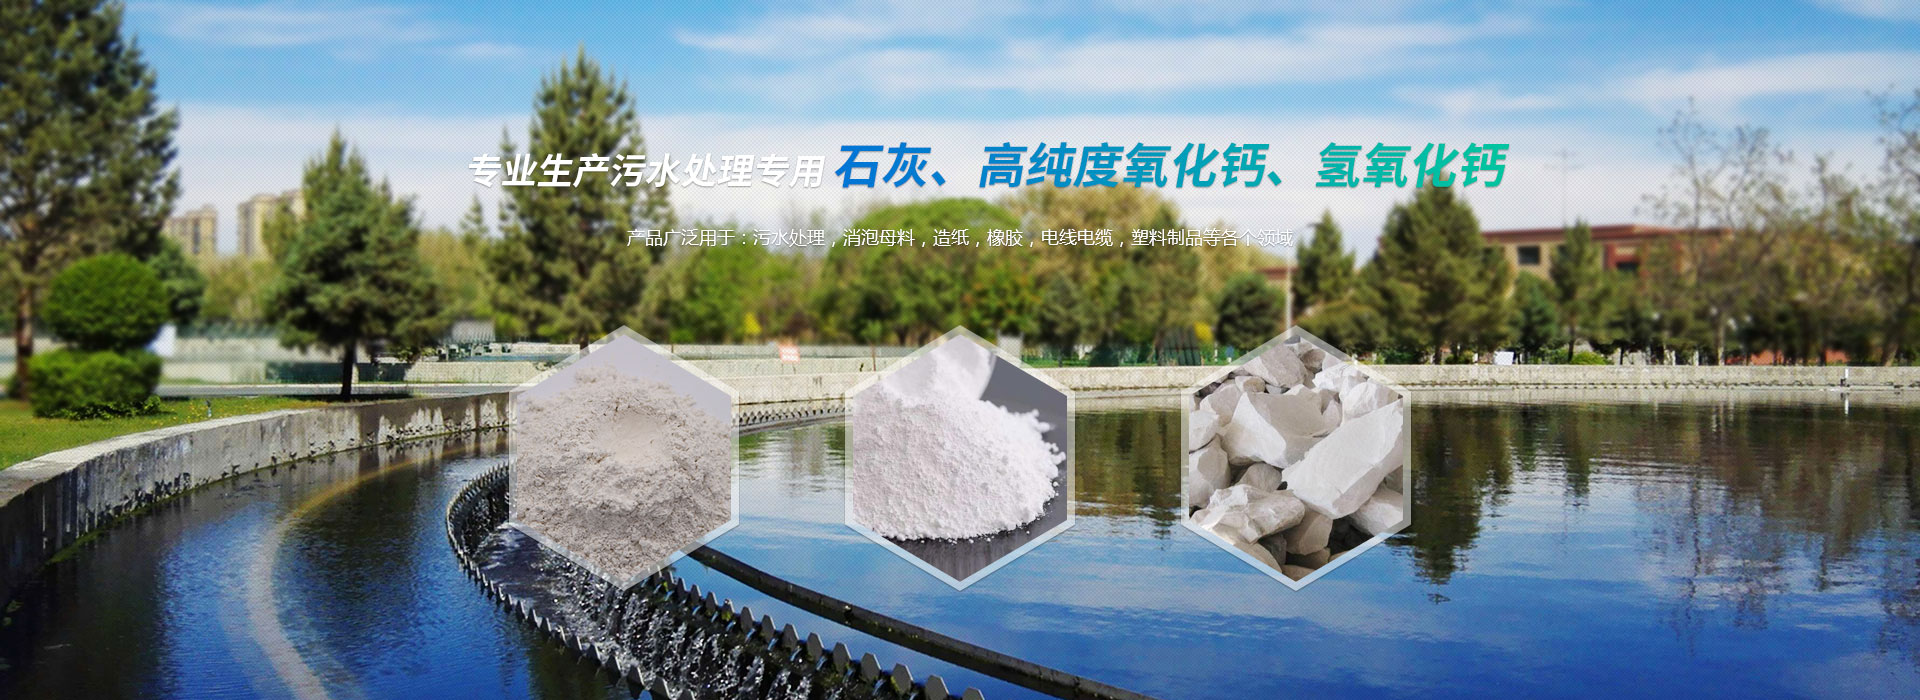 專業生產污水處理專用石灰、高純度氧化鈣、氫氧化鈣